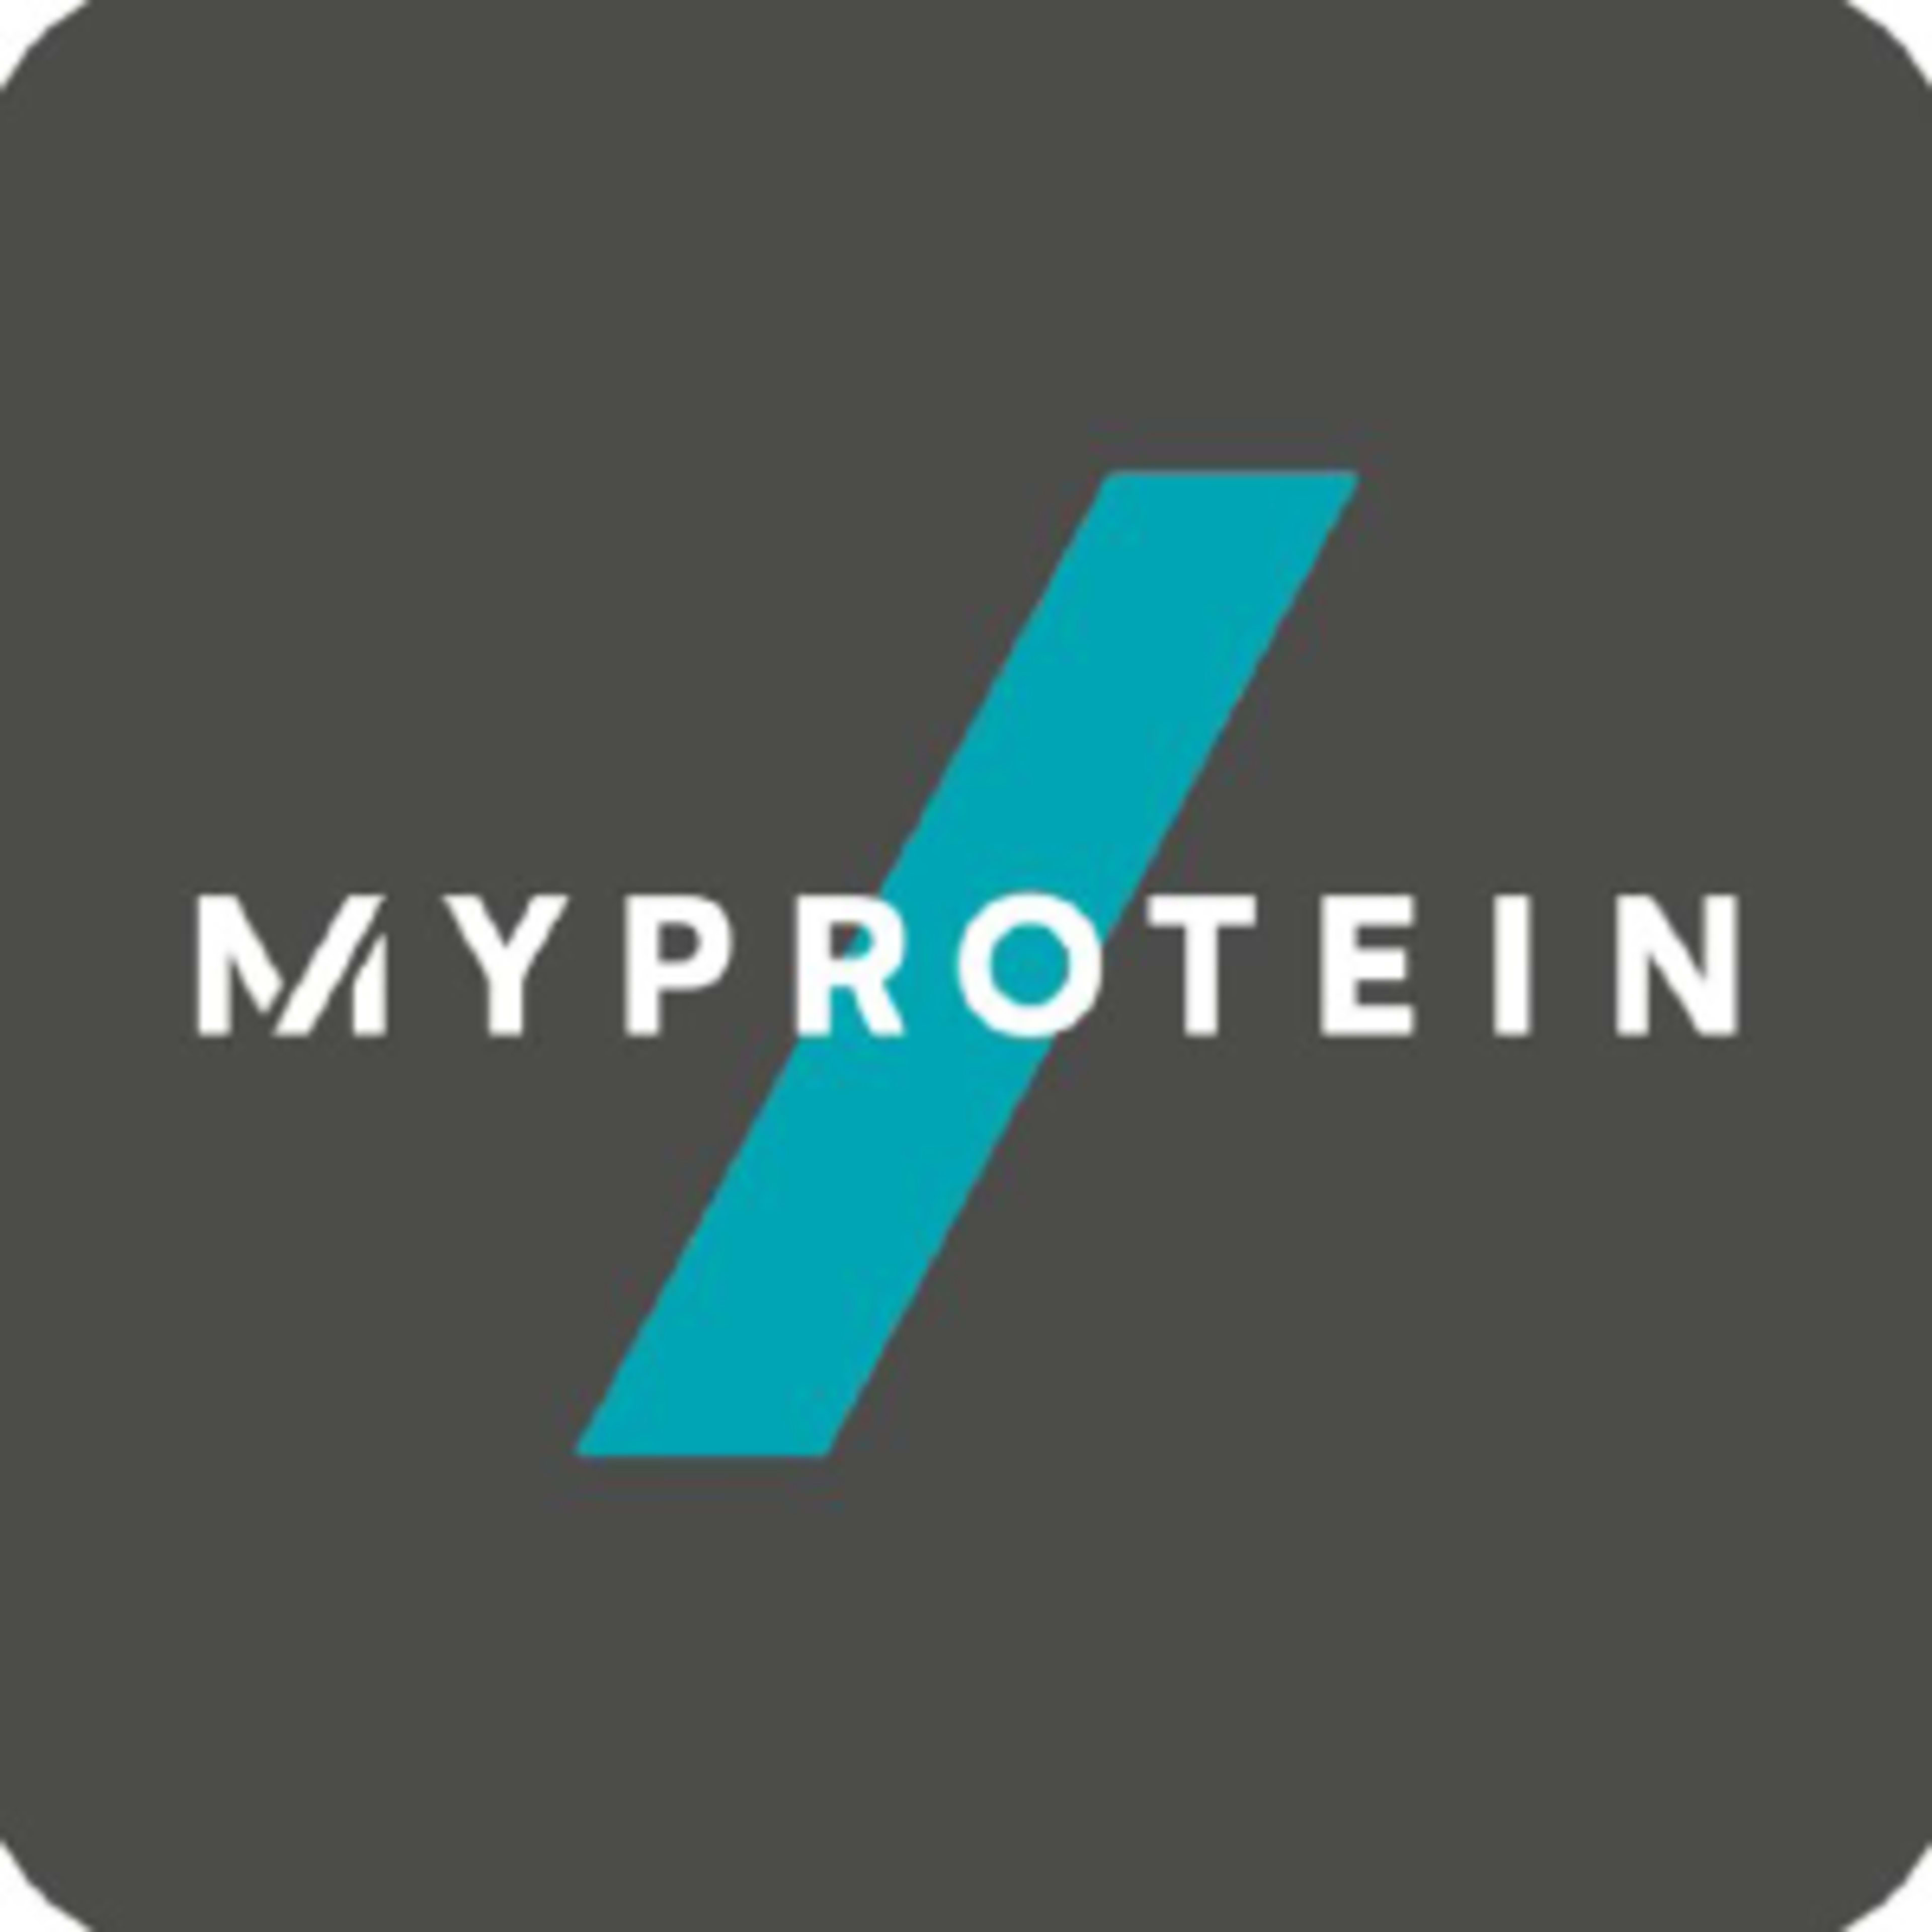 MyProtein CACode